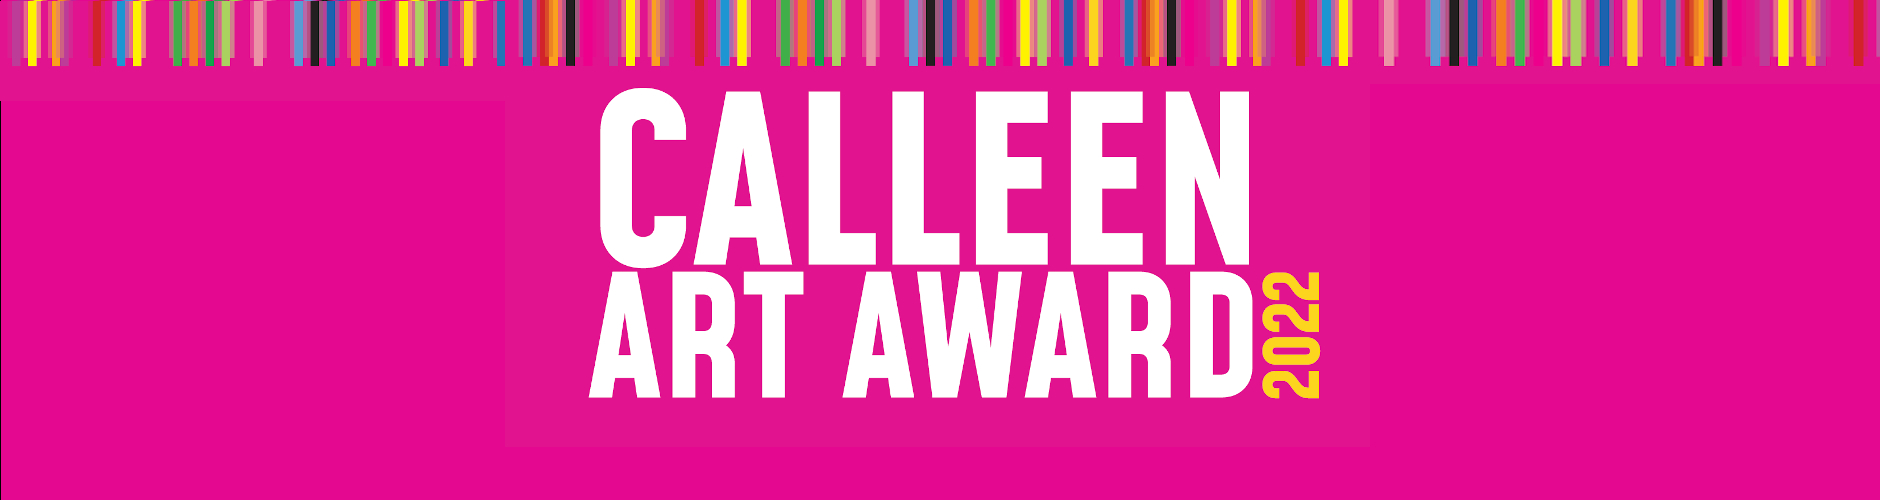 Calleen Art Award 2022 Web Banner